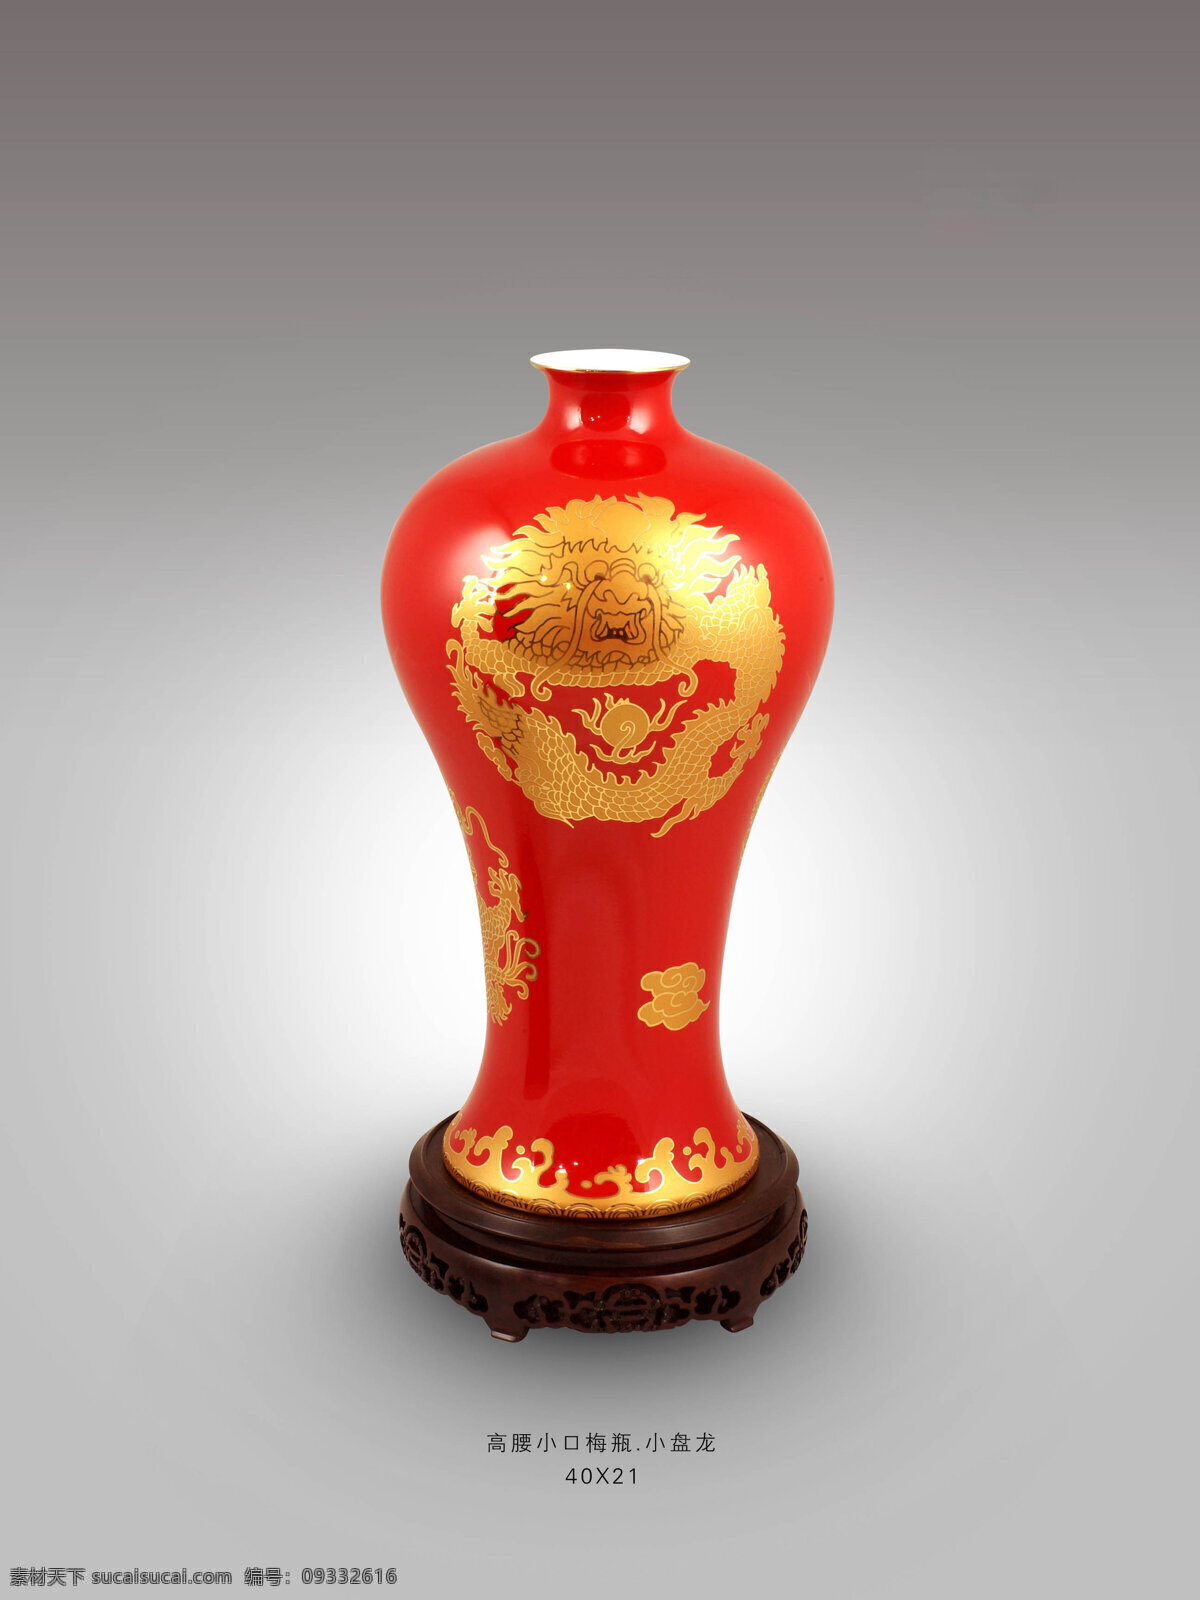 红瓷花瓶系列 锁脚梅瓶 红瓷 花瓶 礼品 定制 厂家 湖南醴陵 祥龙窑 文化艺术